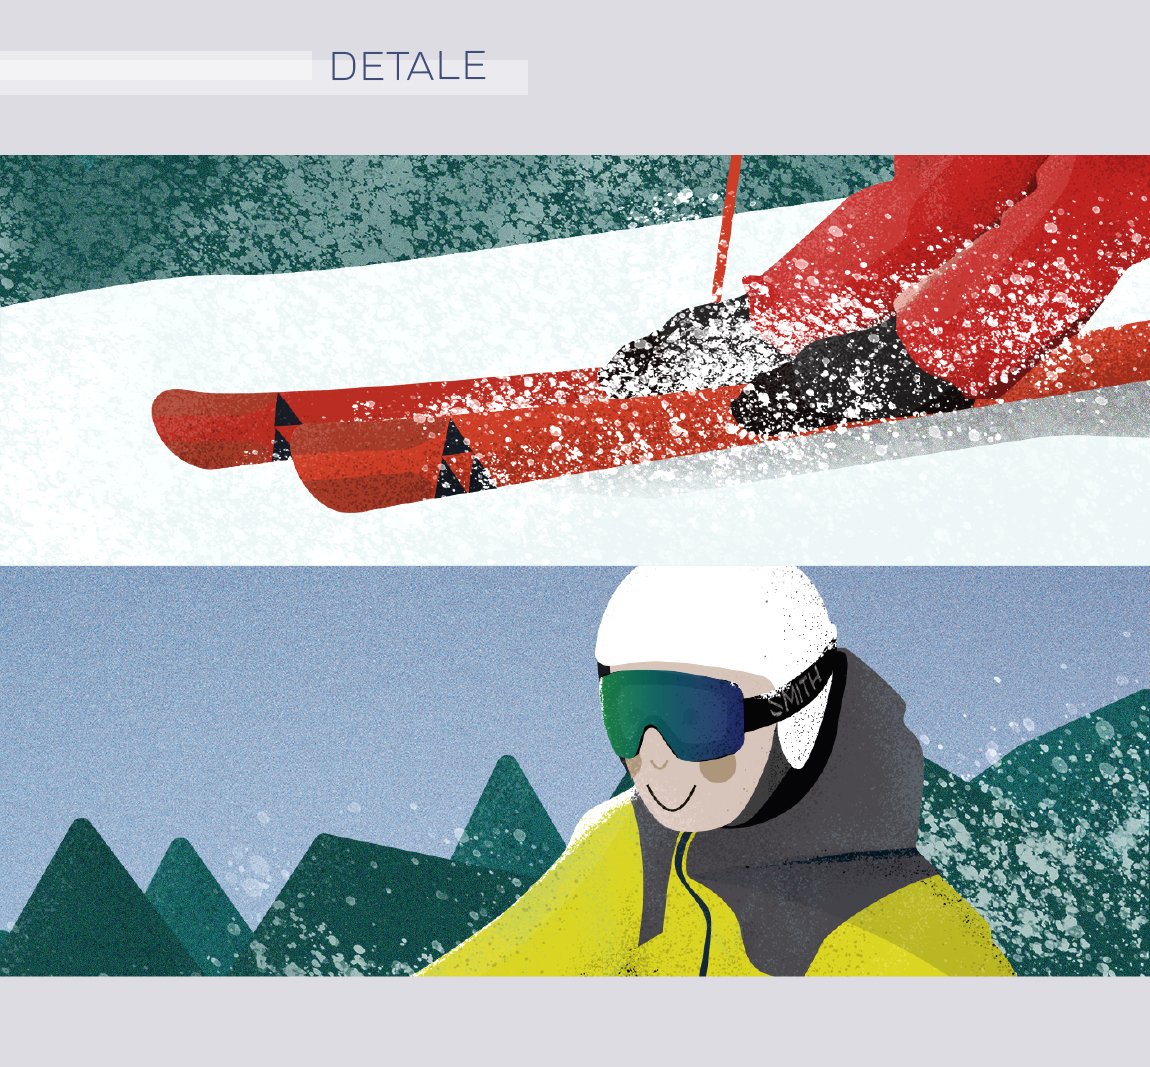 fischer-smith-googles-skitest-event-szczyrk-wisla-szklarska-poreba-bialka-tatrzanska-sport-and-freizeit-plakat-ilustracja-AGRR_3